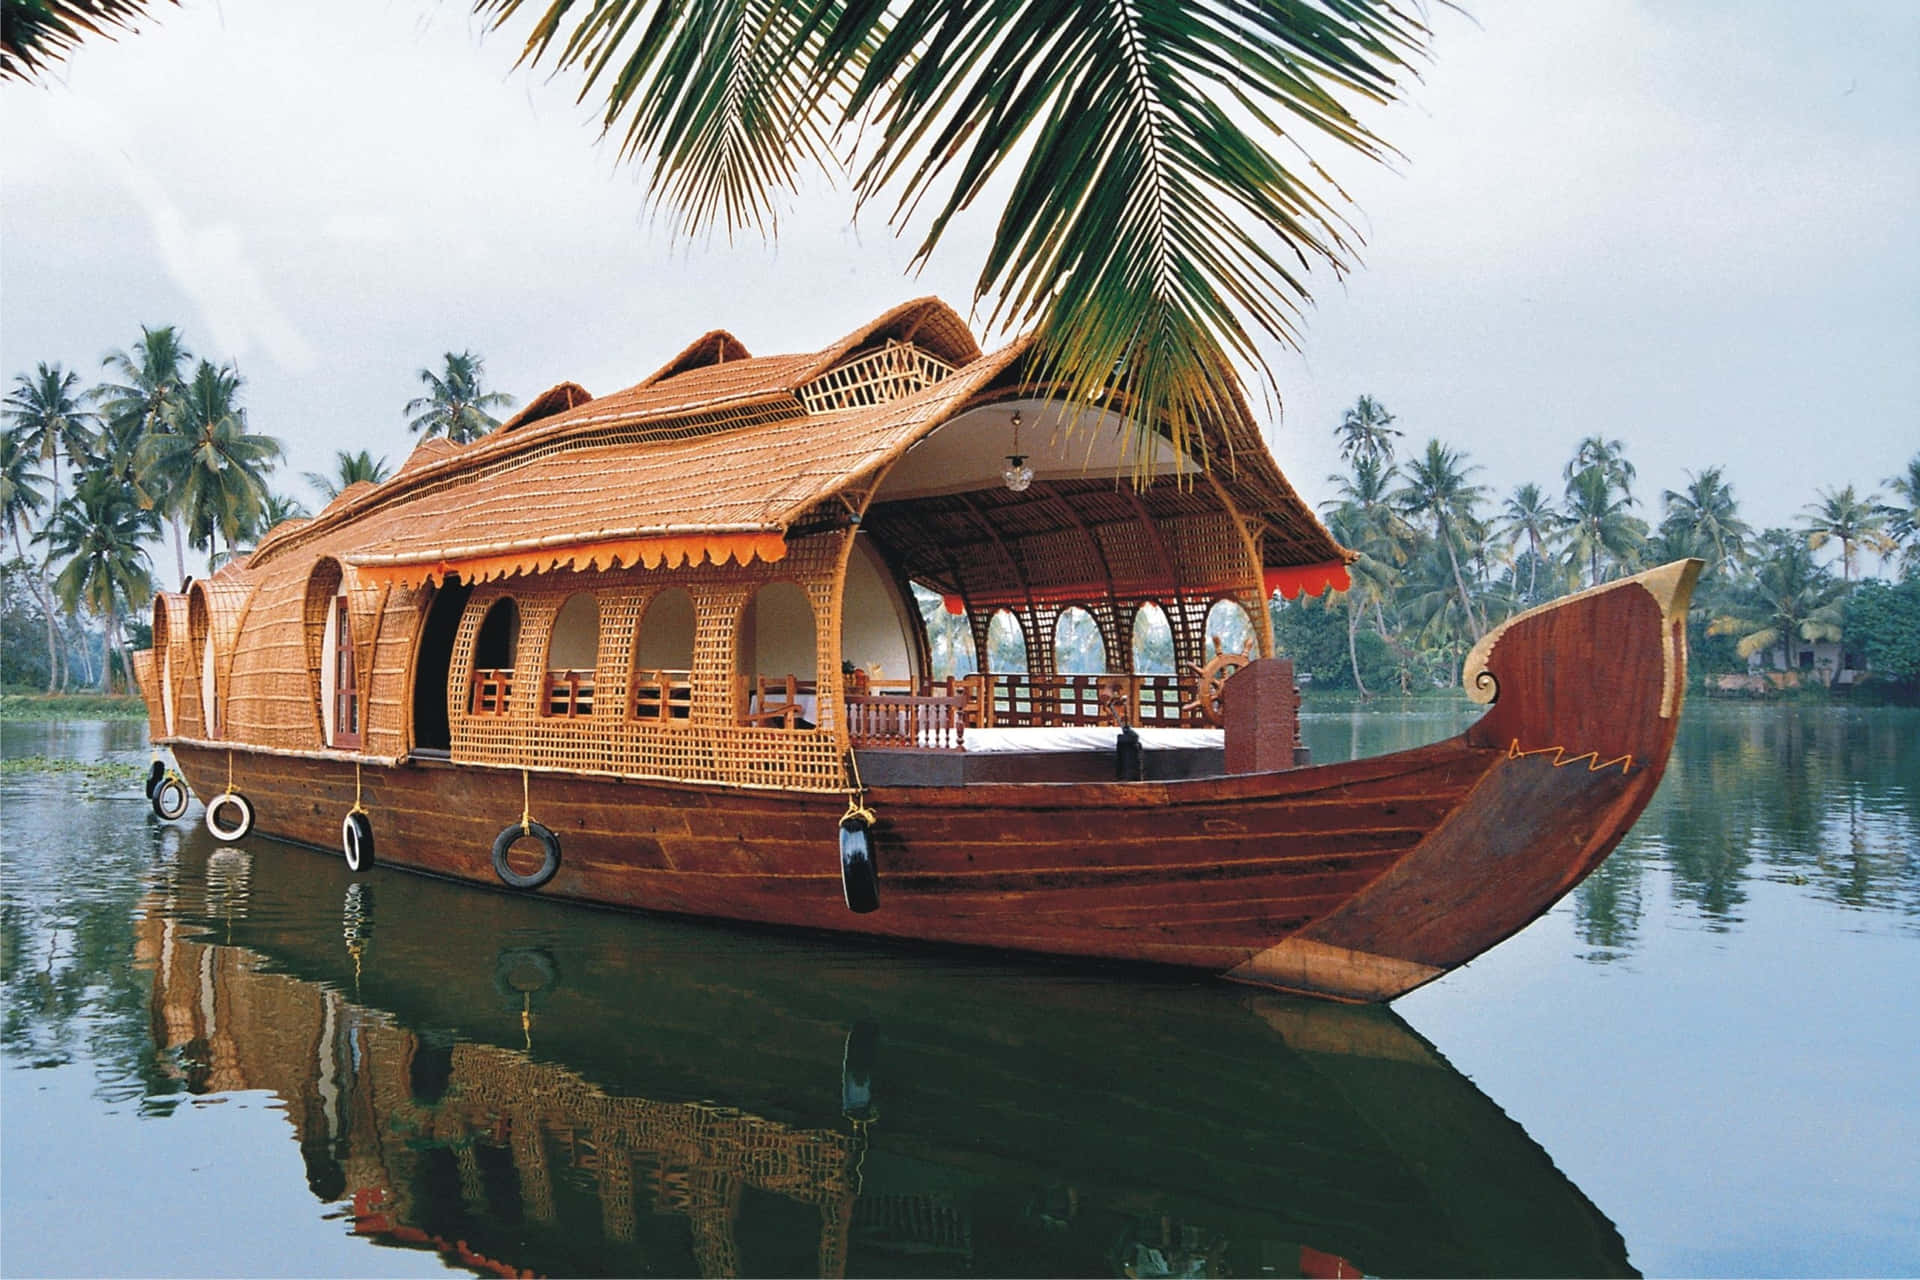 Explore the backwaters of Kerala, India